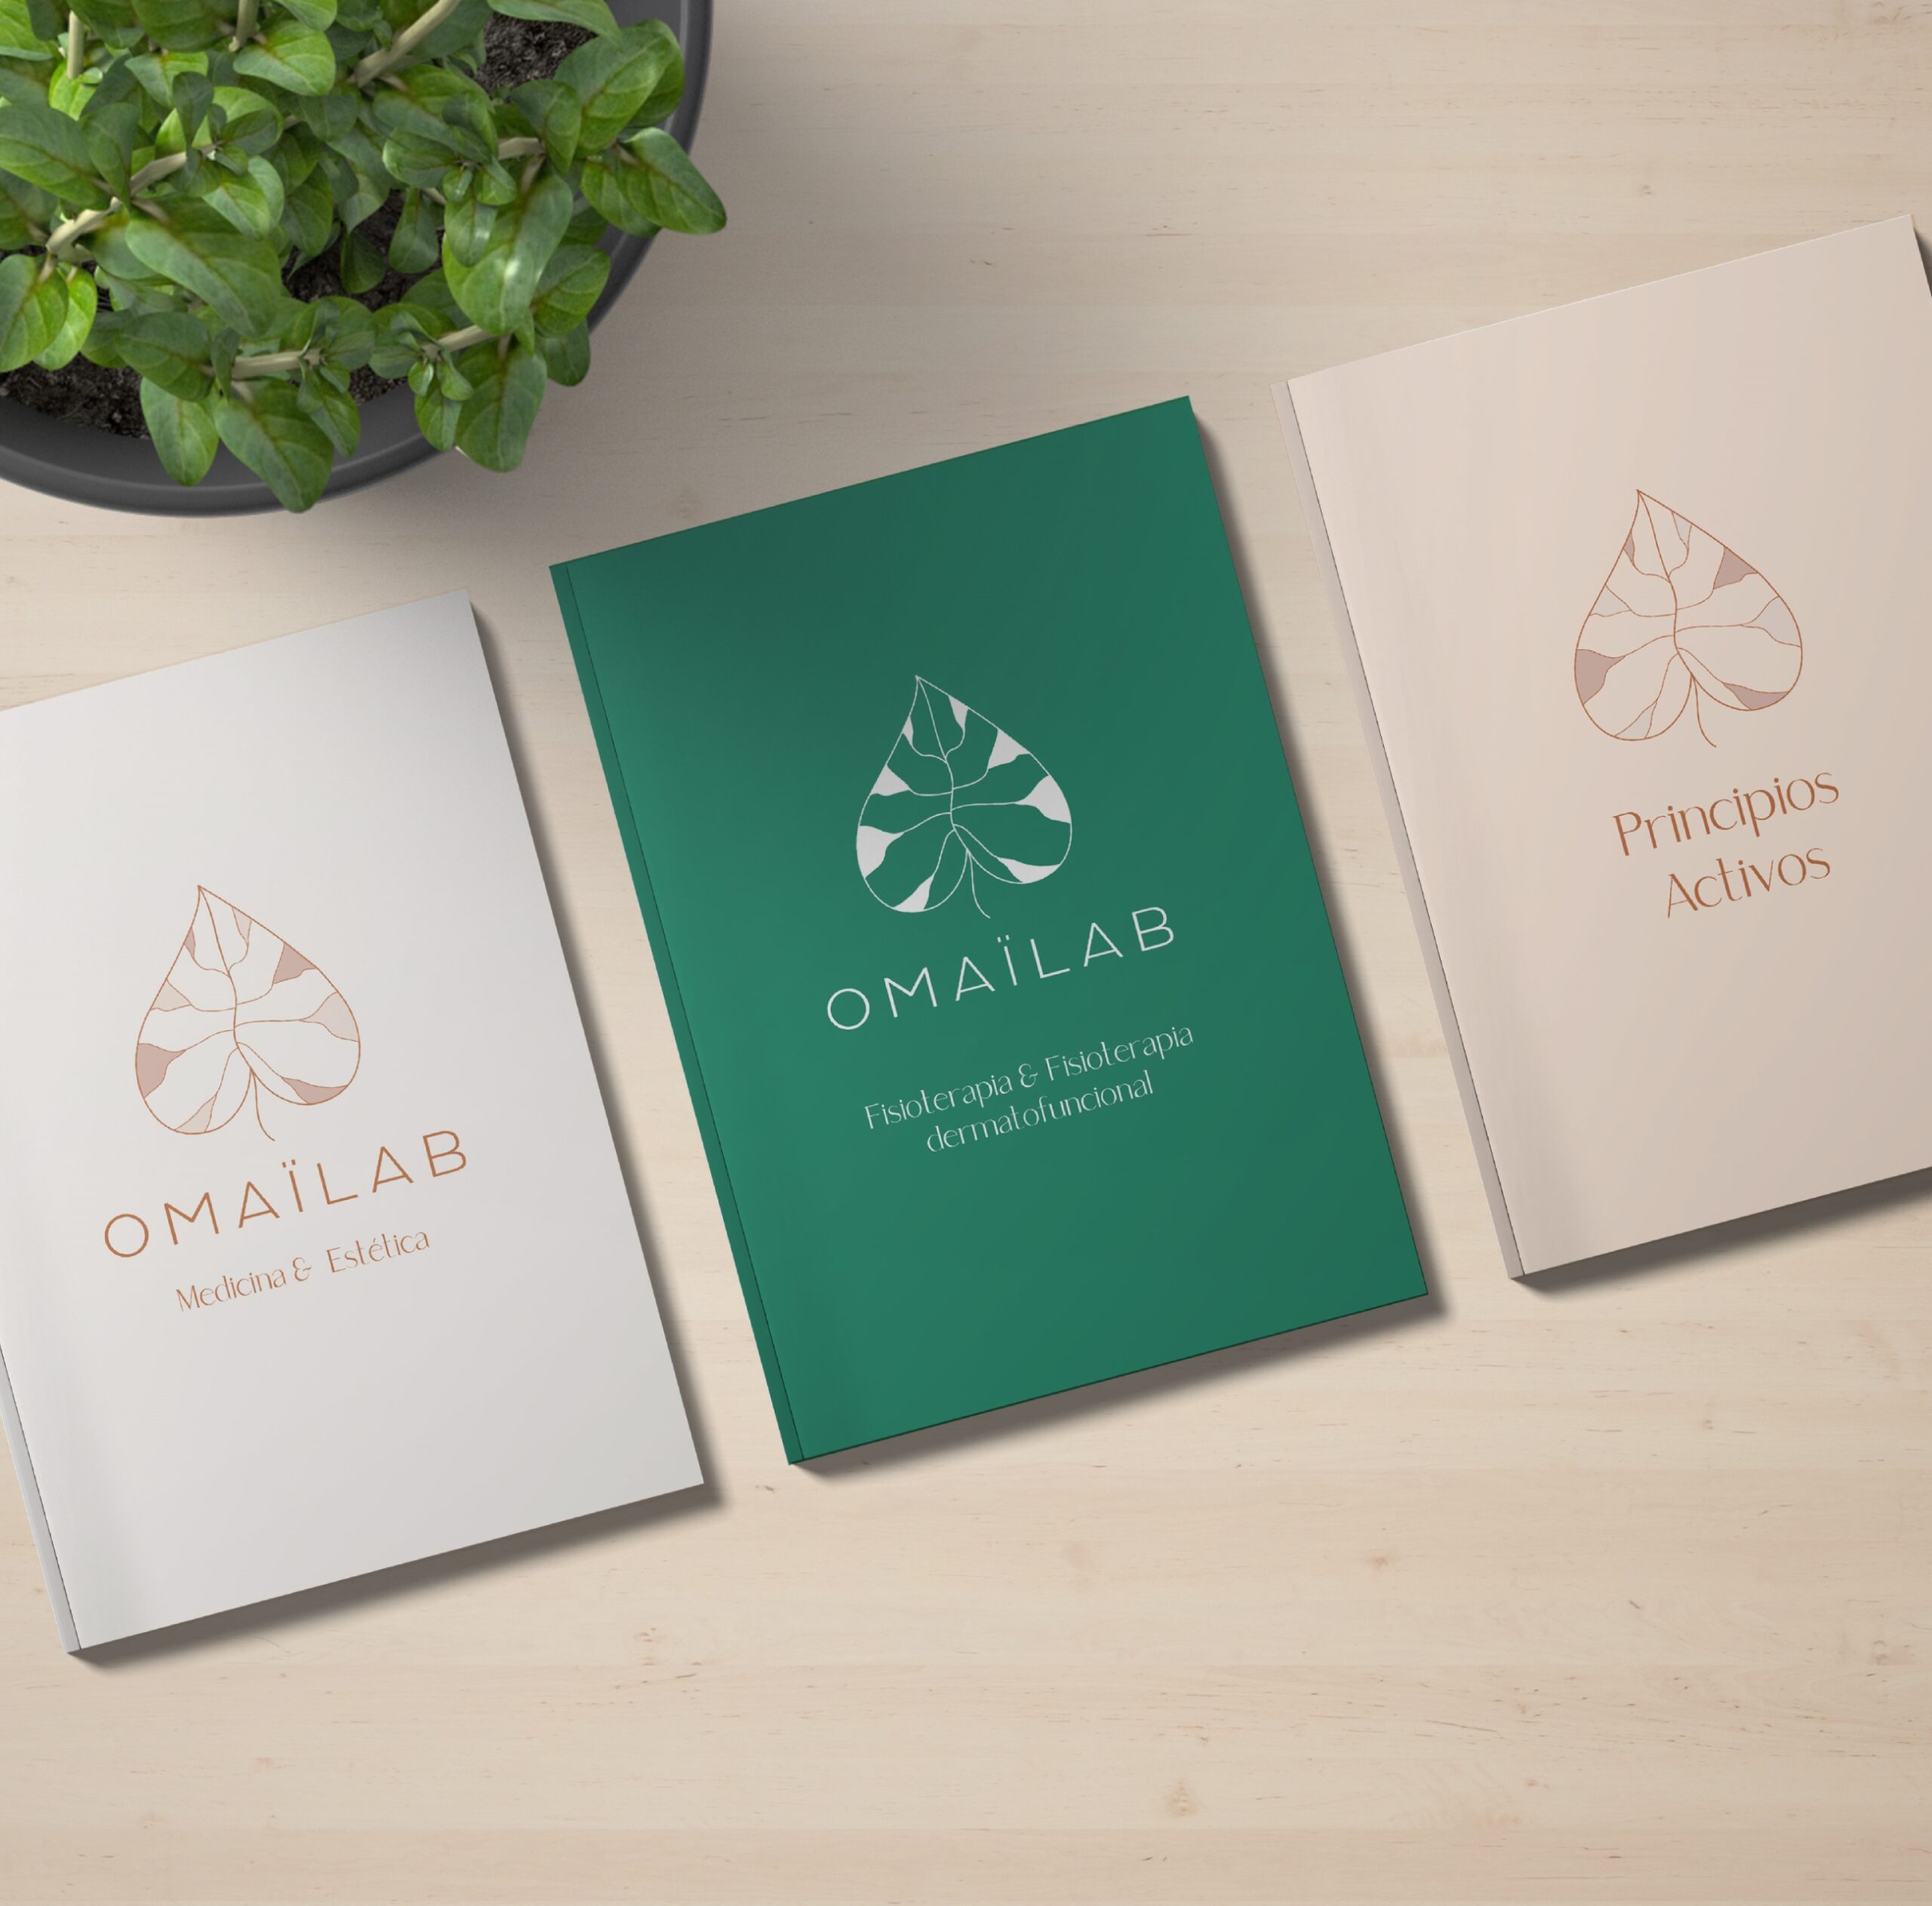 Diseño catálogos cosmética Serdivergente Omailab